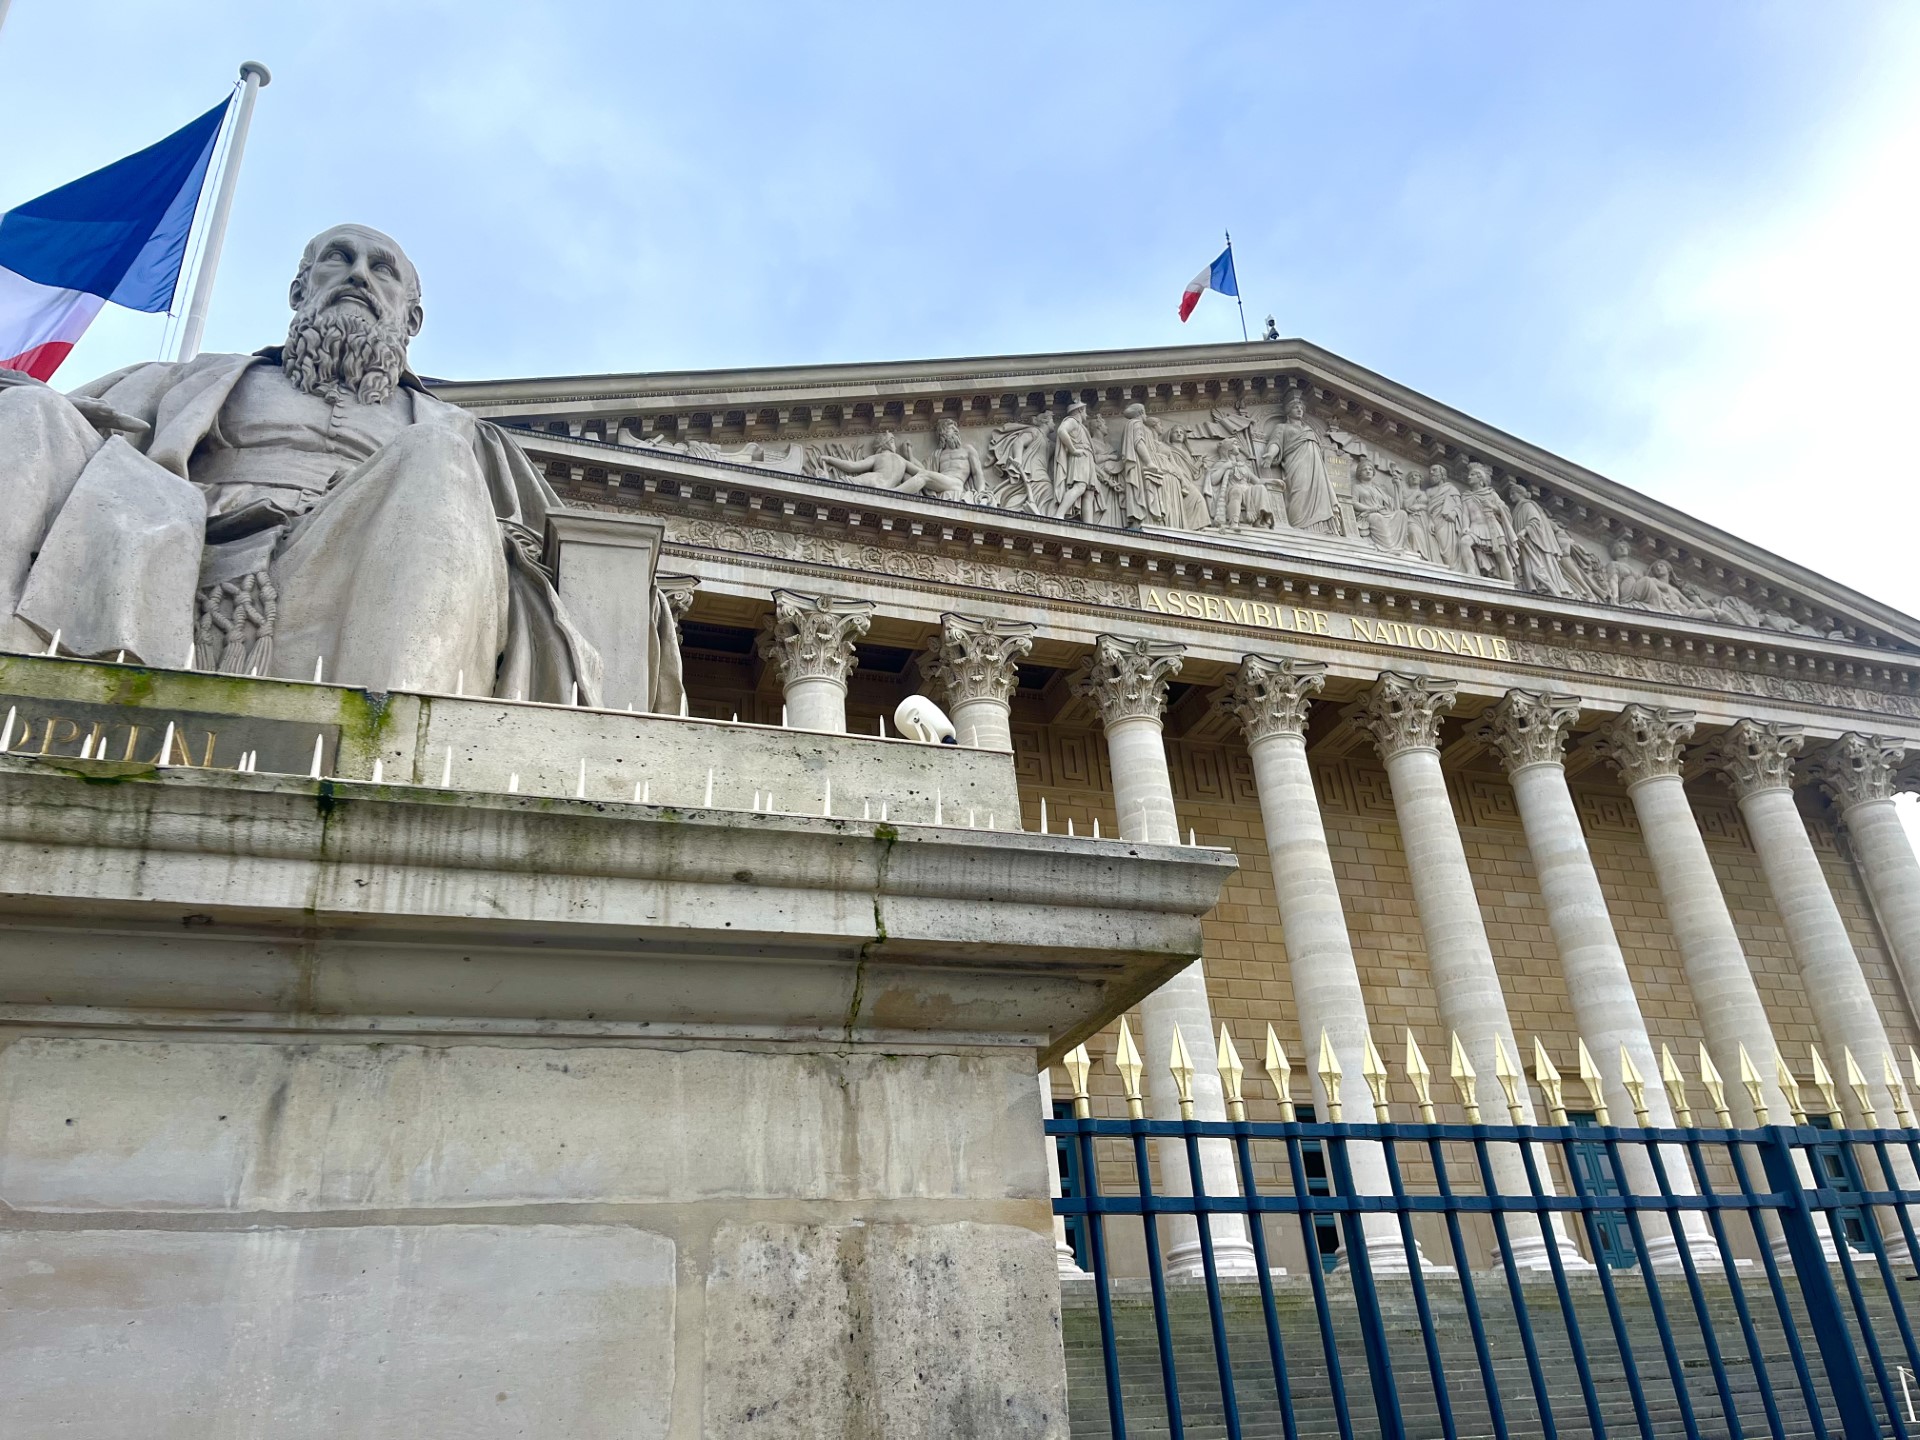     « Aucun intérêt pour les territoires », les parlementaires déçus par la nomination de Marie Guévenoux

